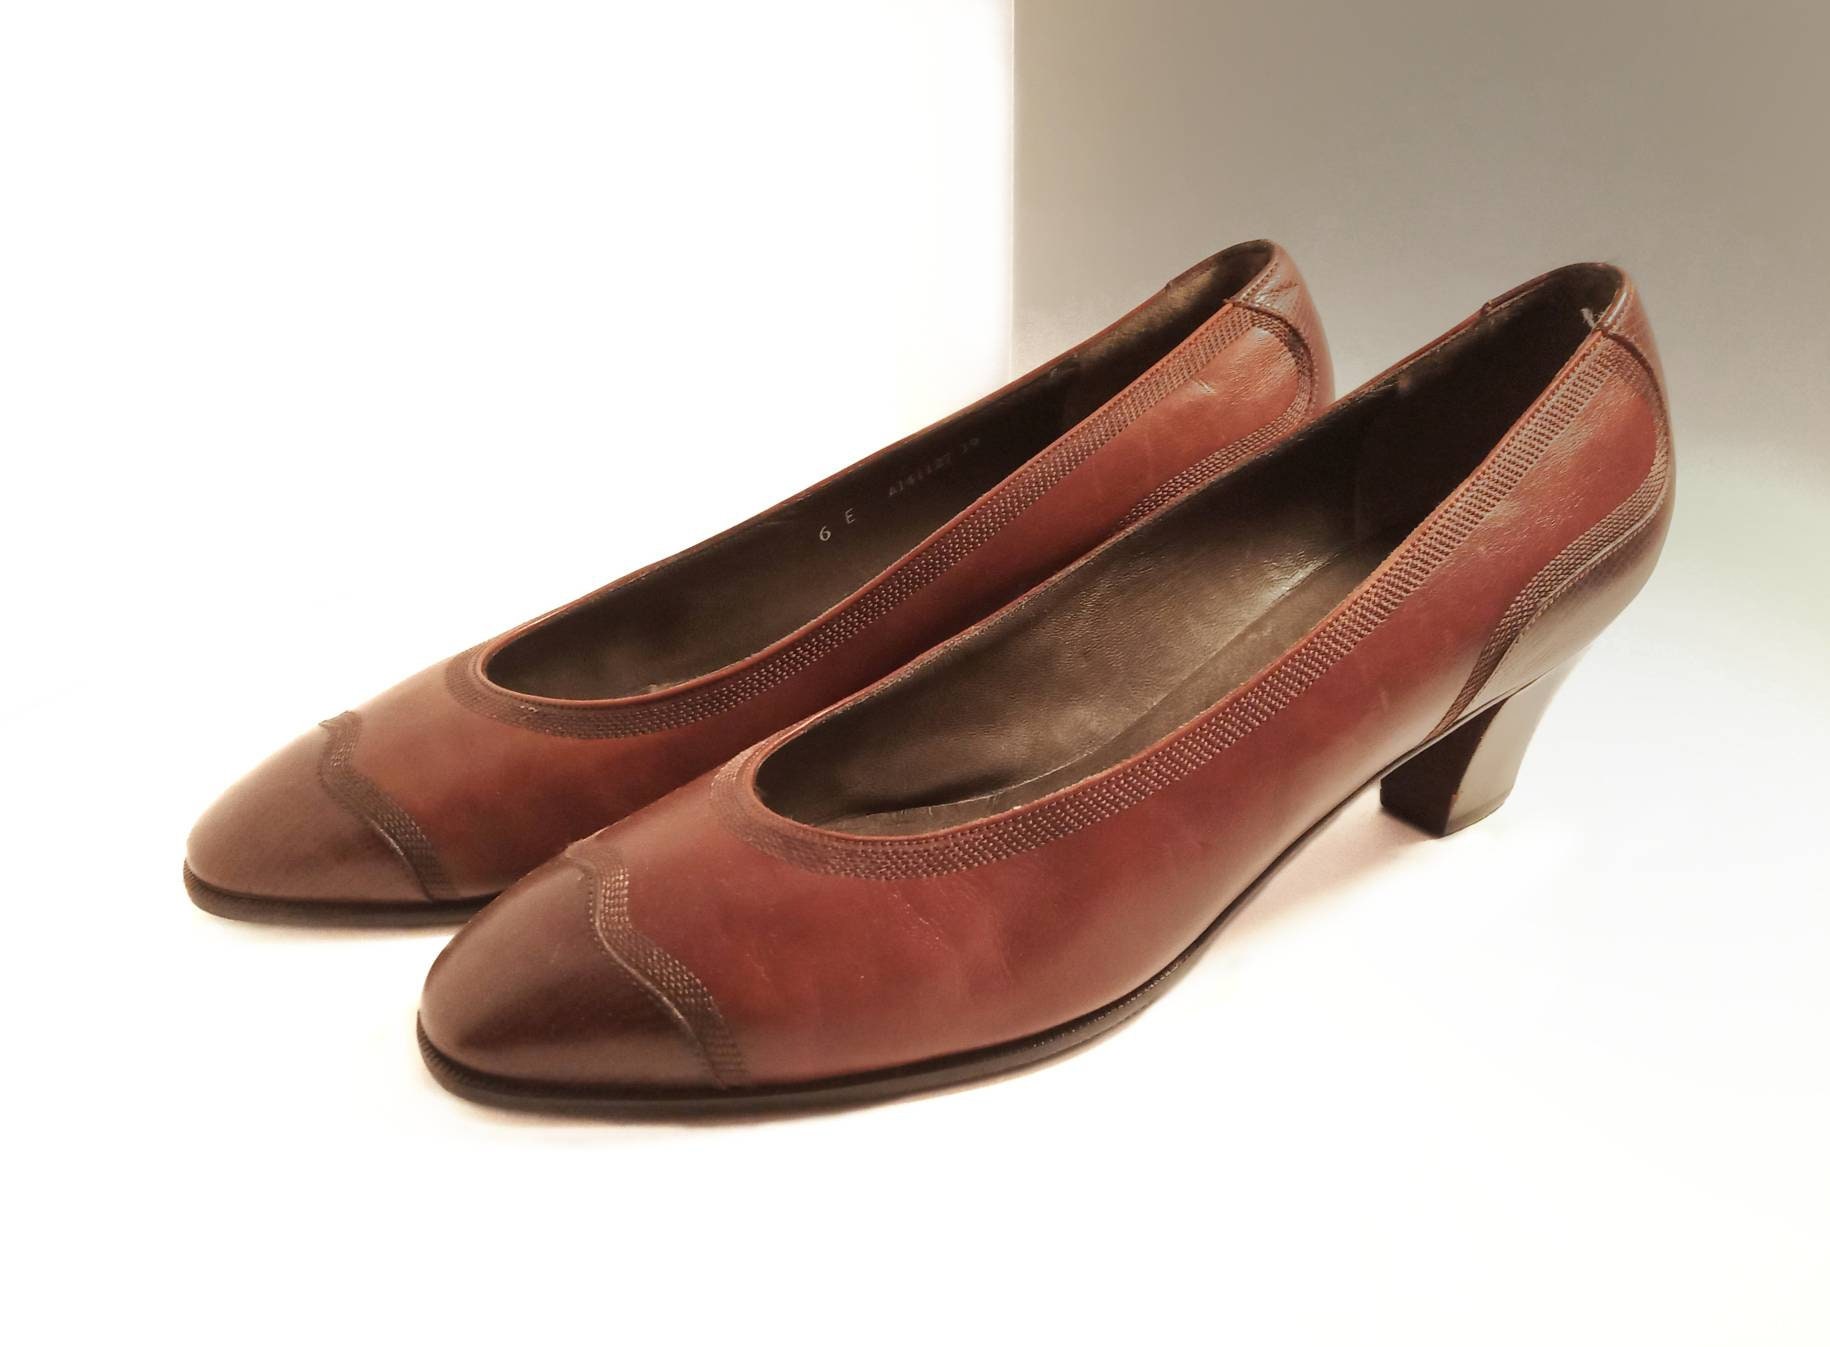 talons moyens de Bally de Suisse Taille 6E Chaussures Chaussures femme Escarpins chaussures vintage pour femmes caramel et cuir brun chaussures Bally vintage 